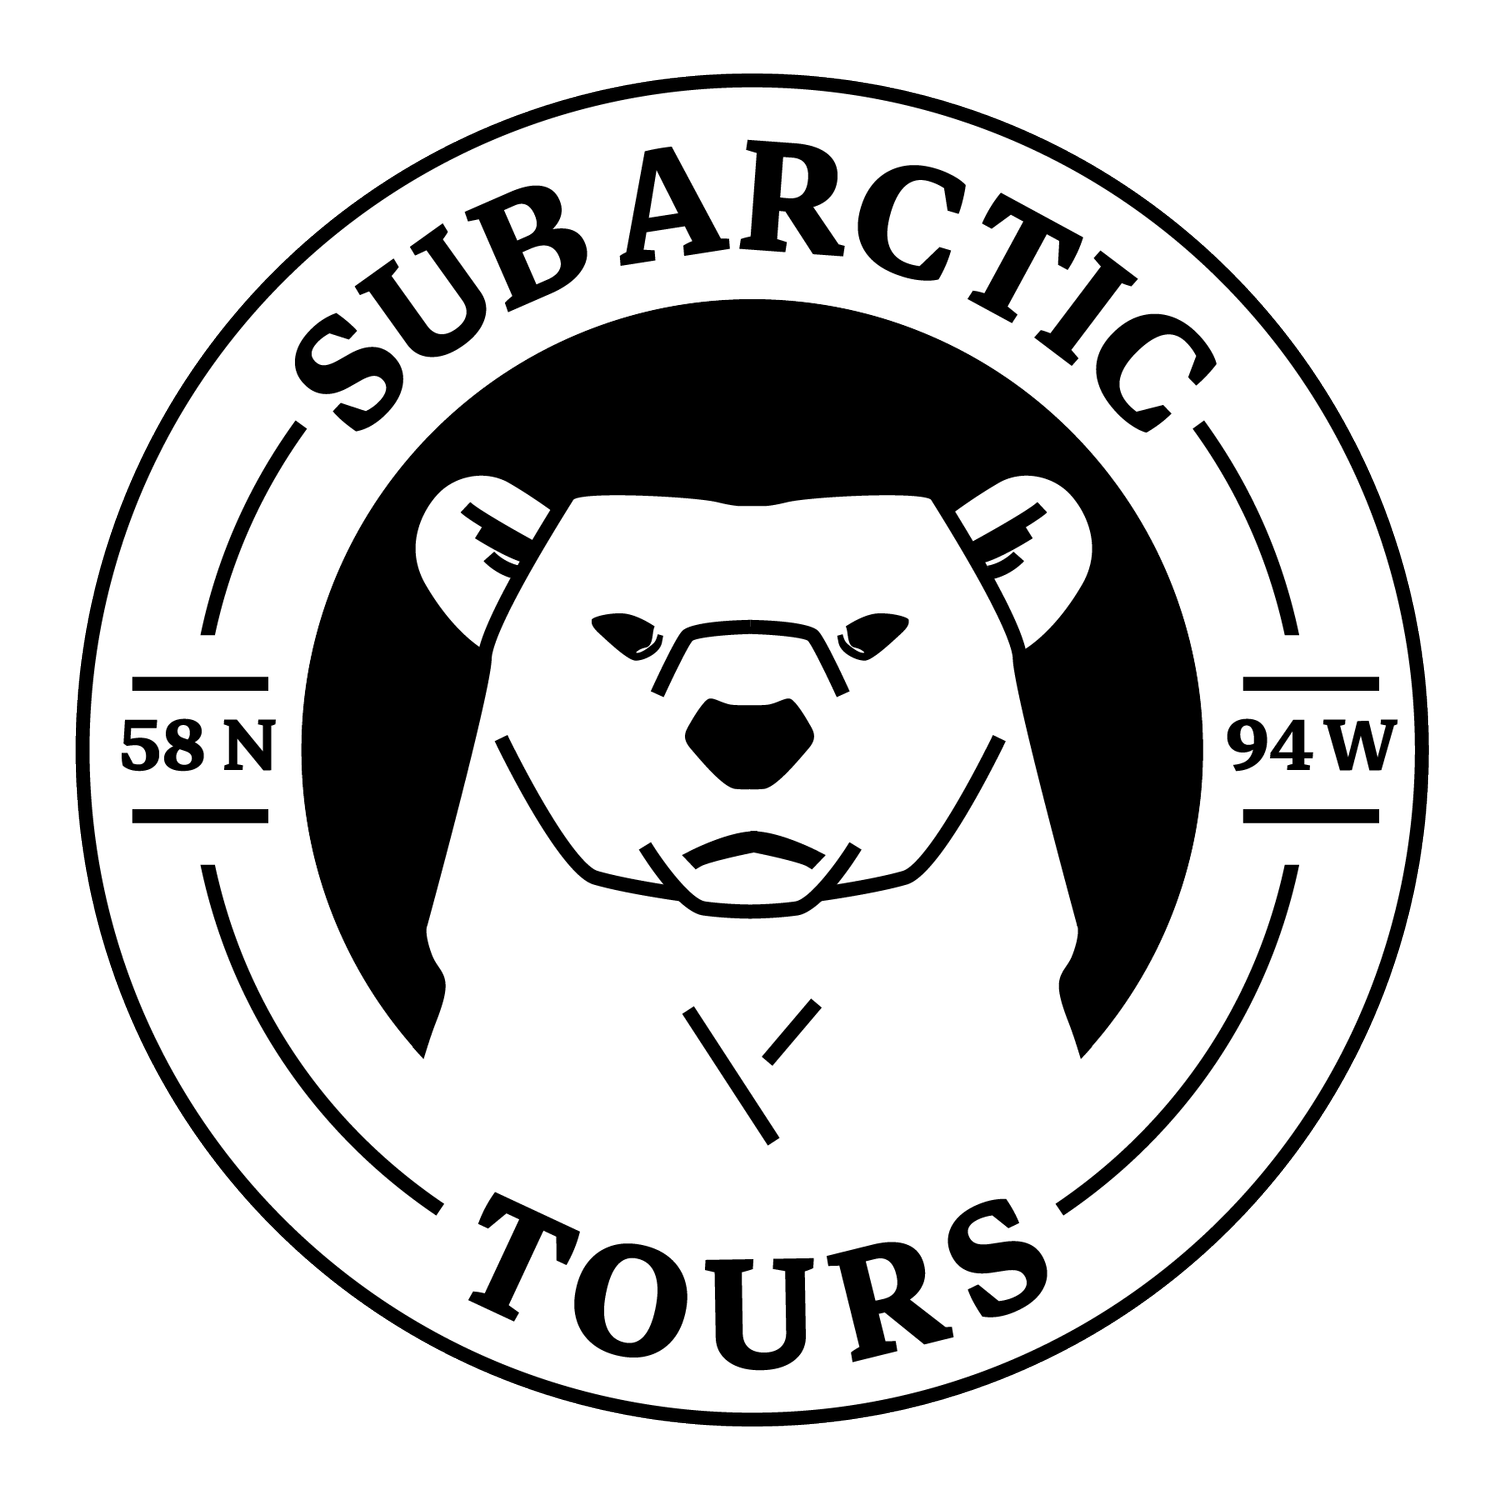 Sub-Arctic Tours